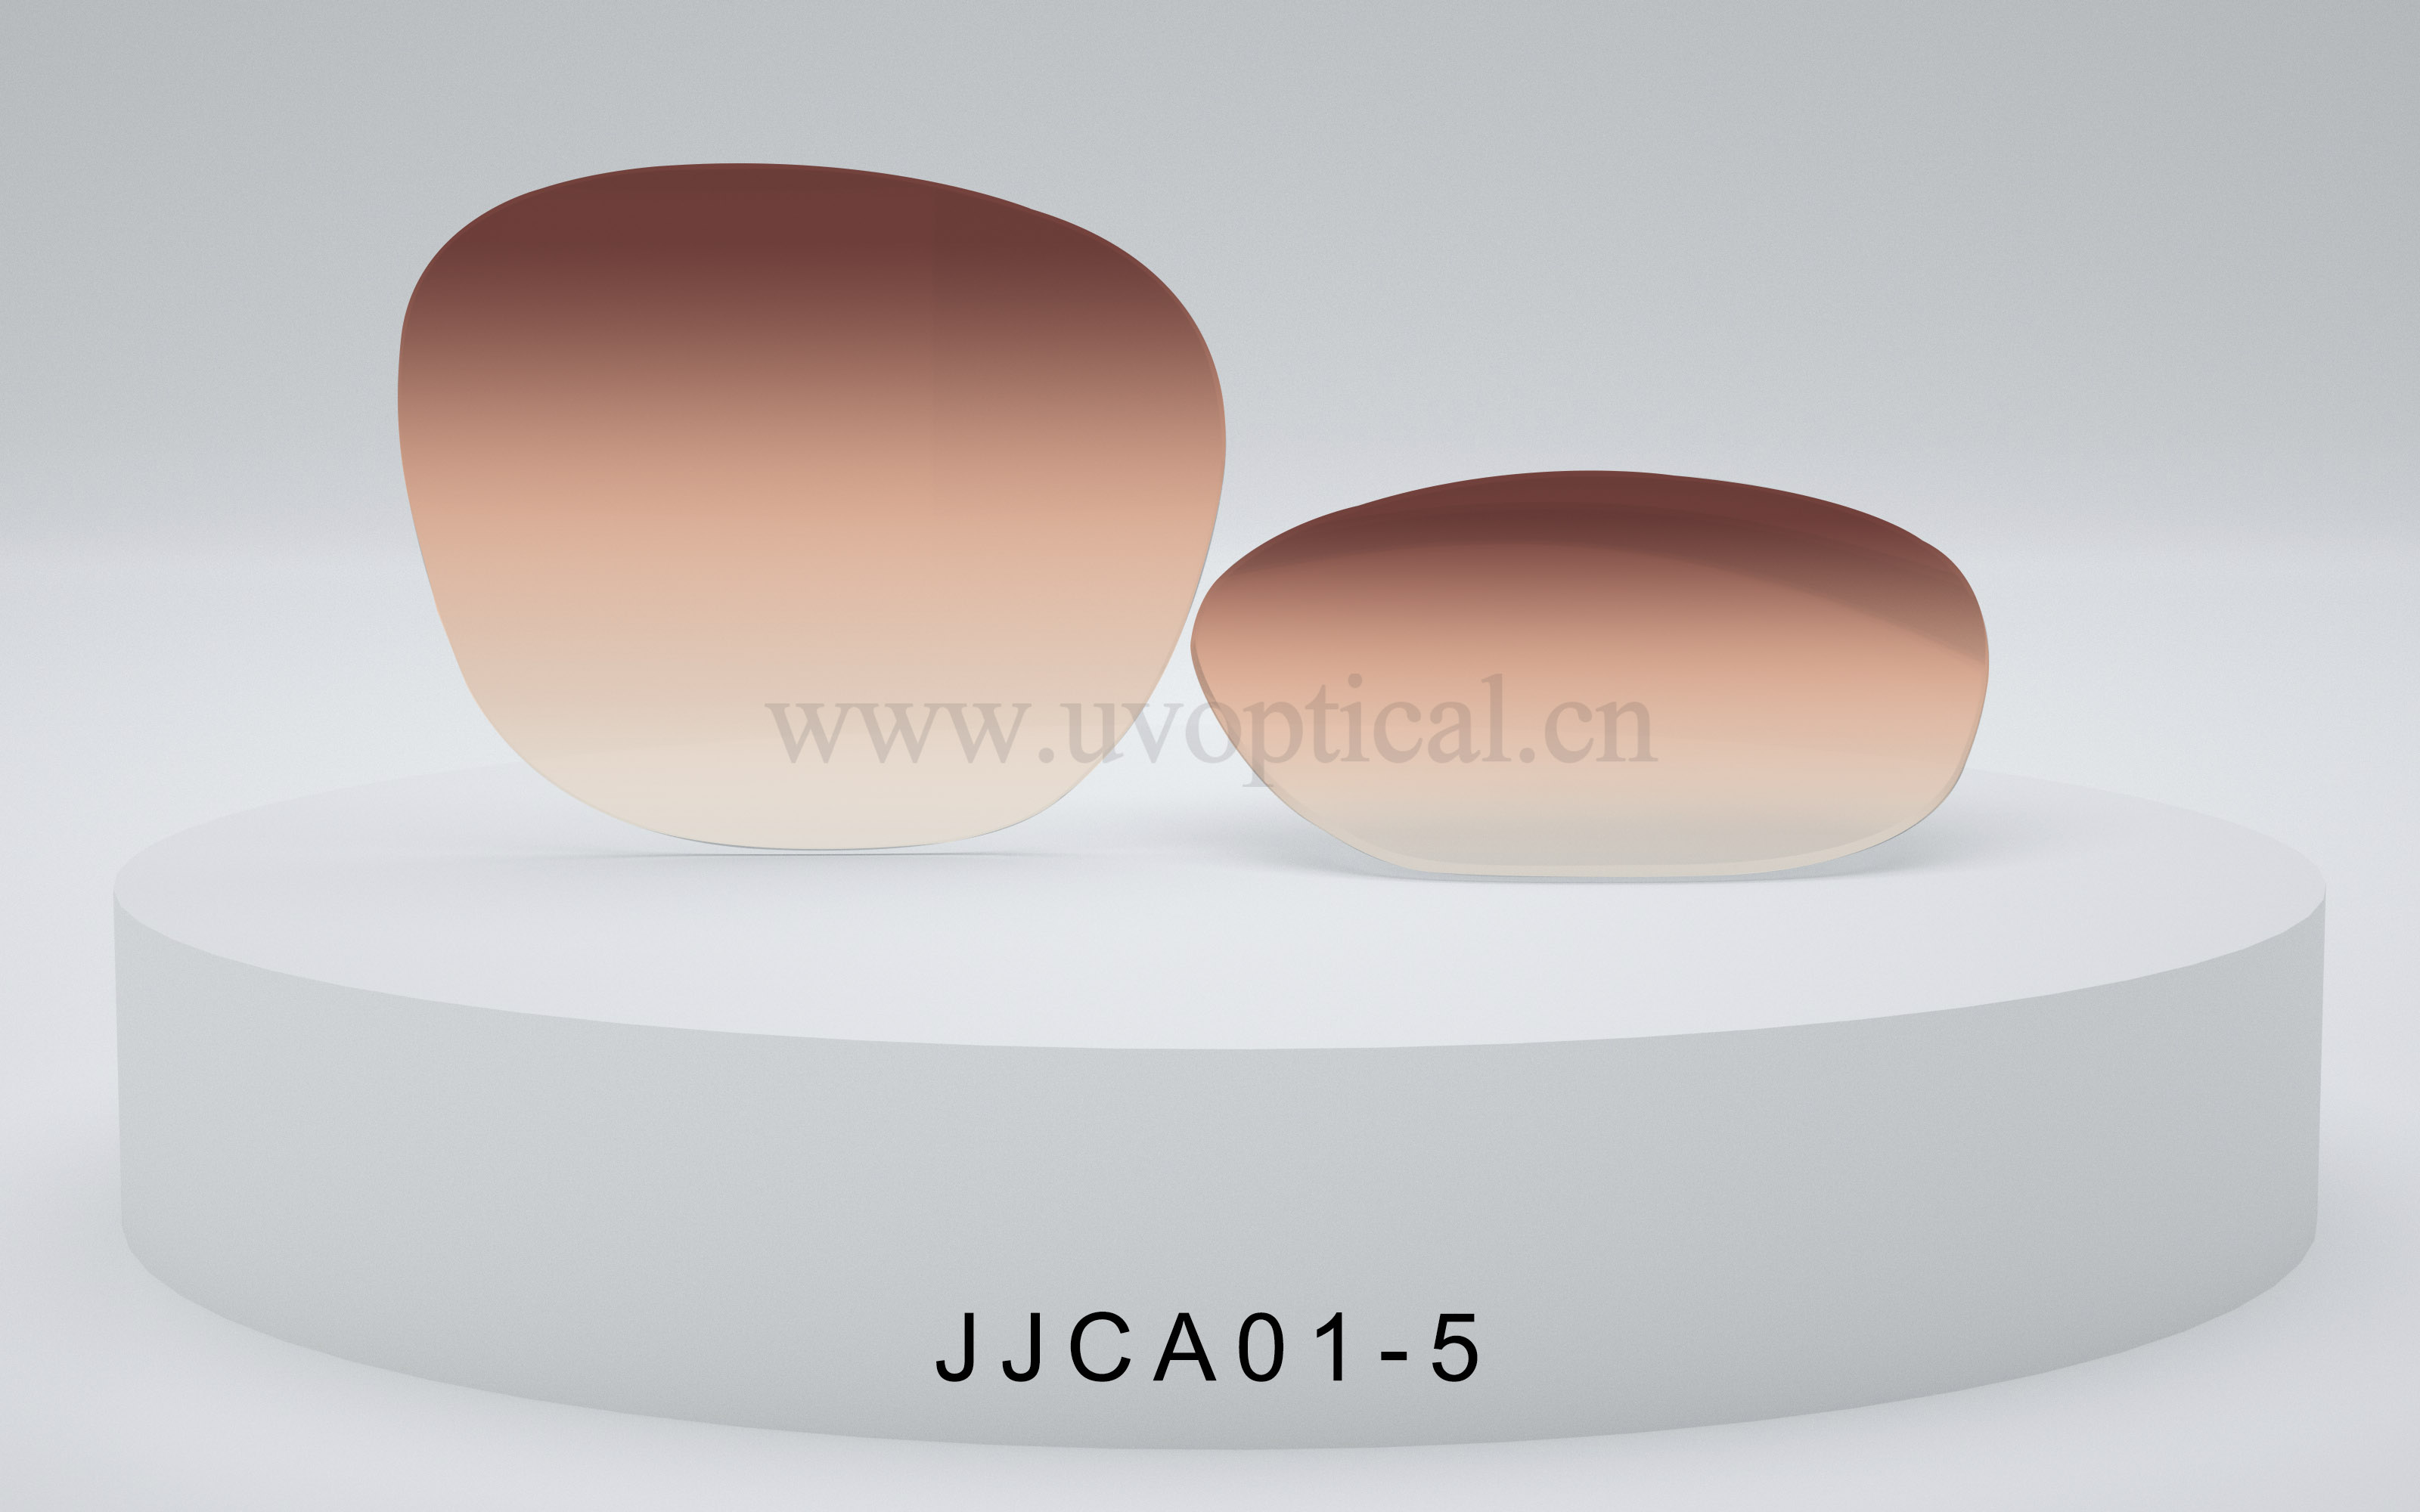 JJCA01-5